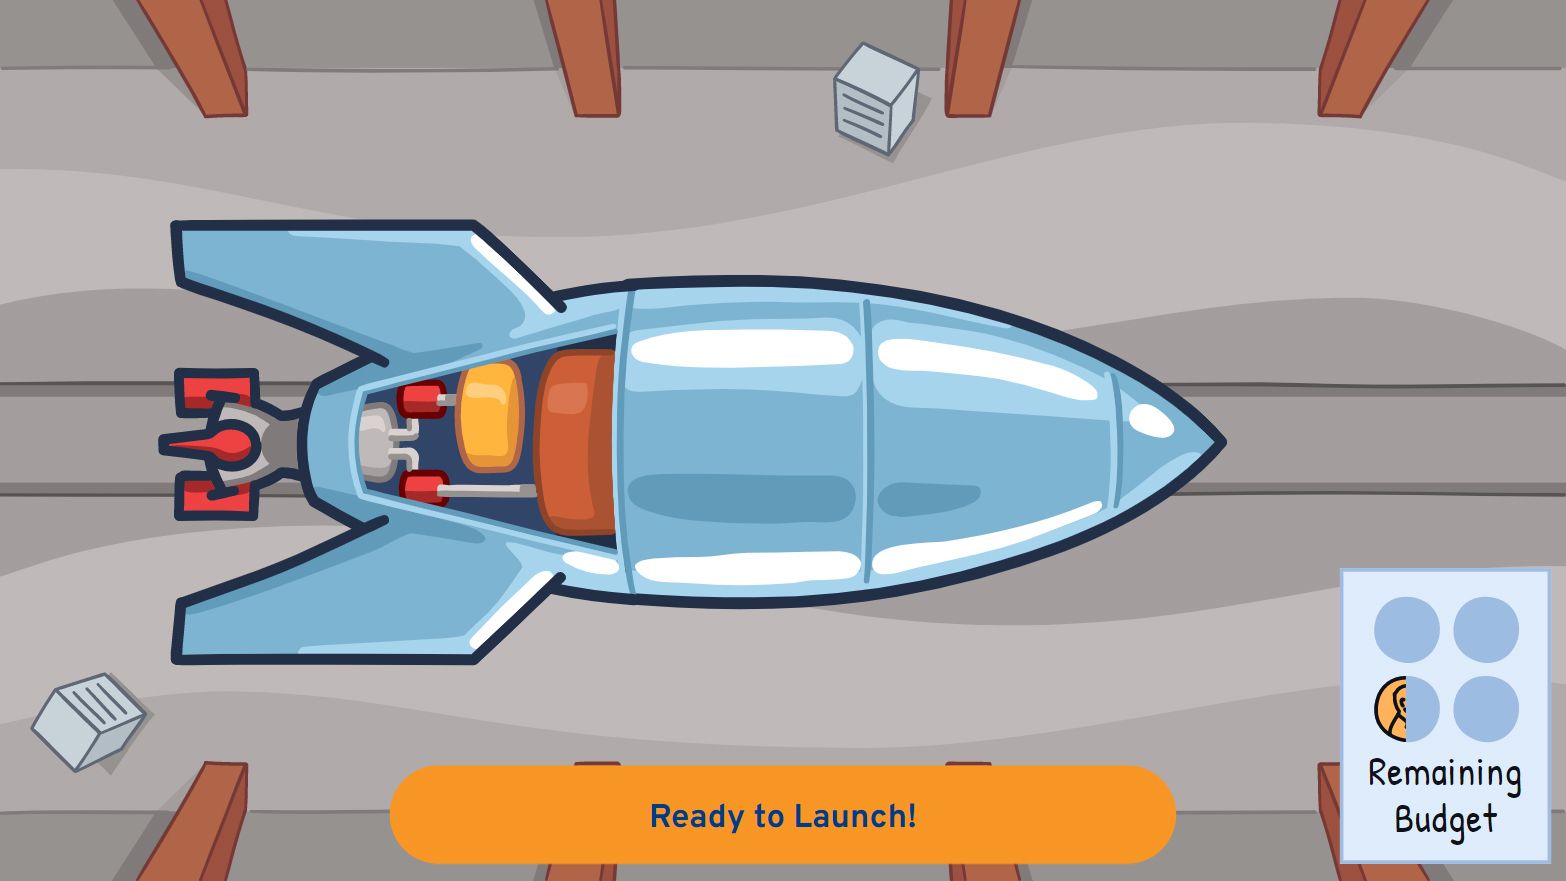 Rocket building example